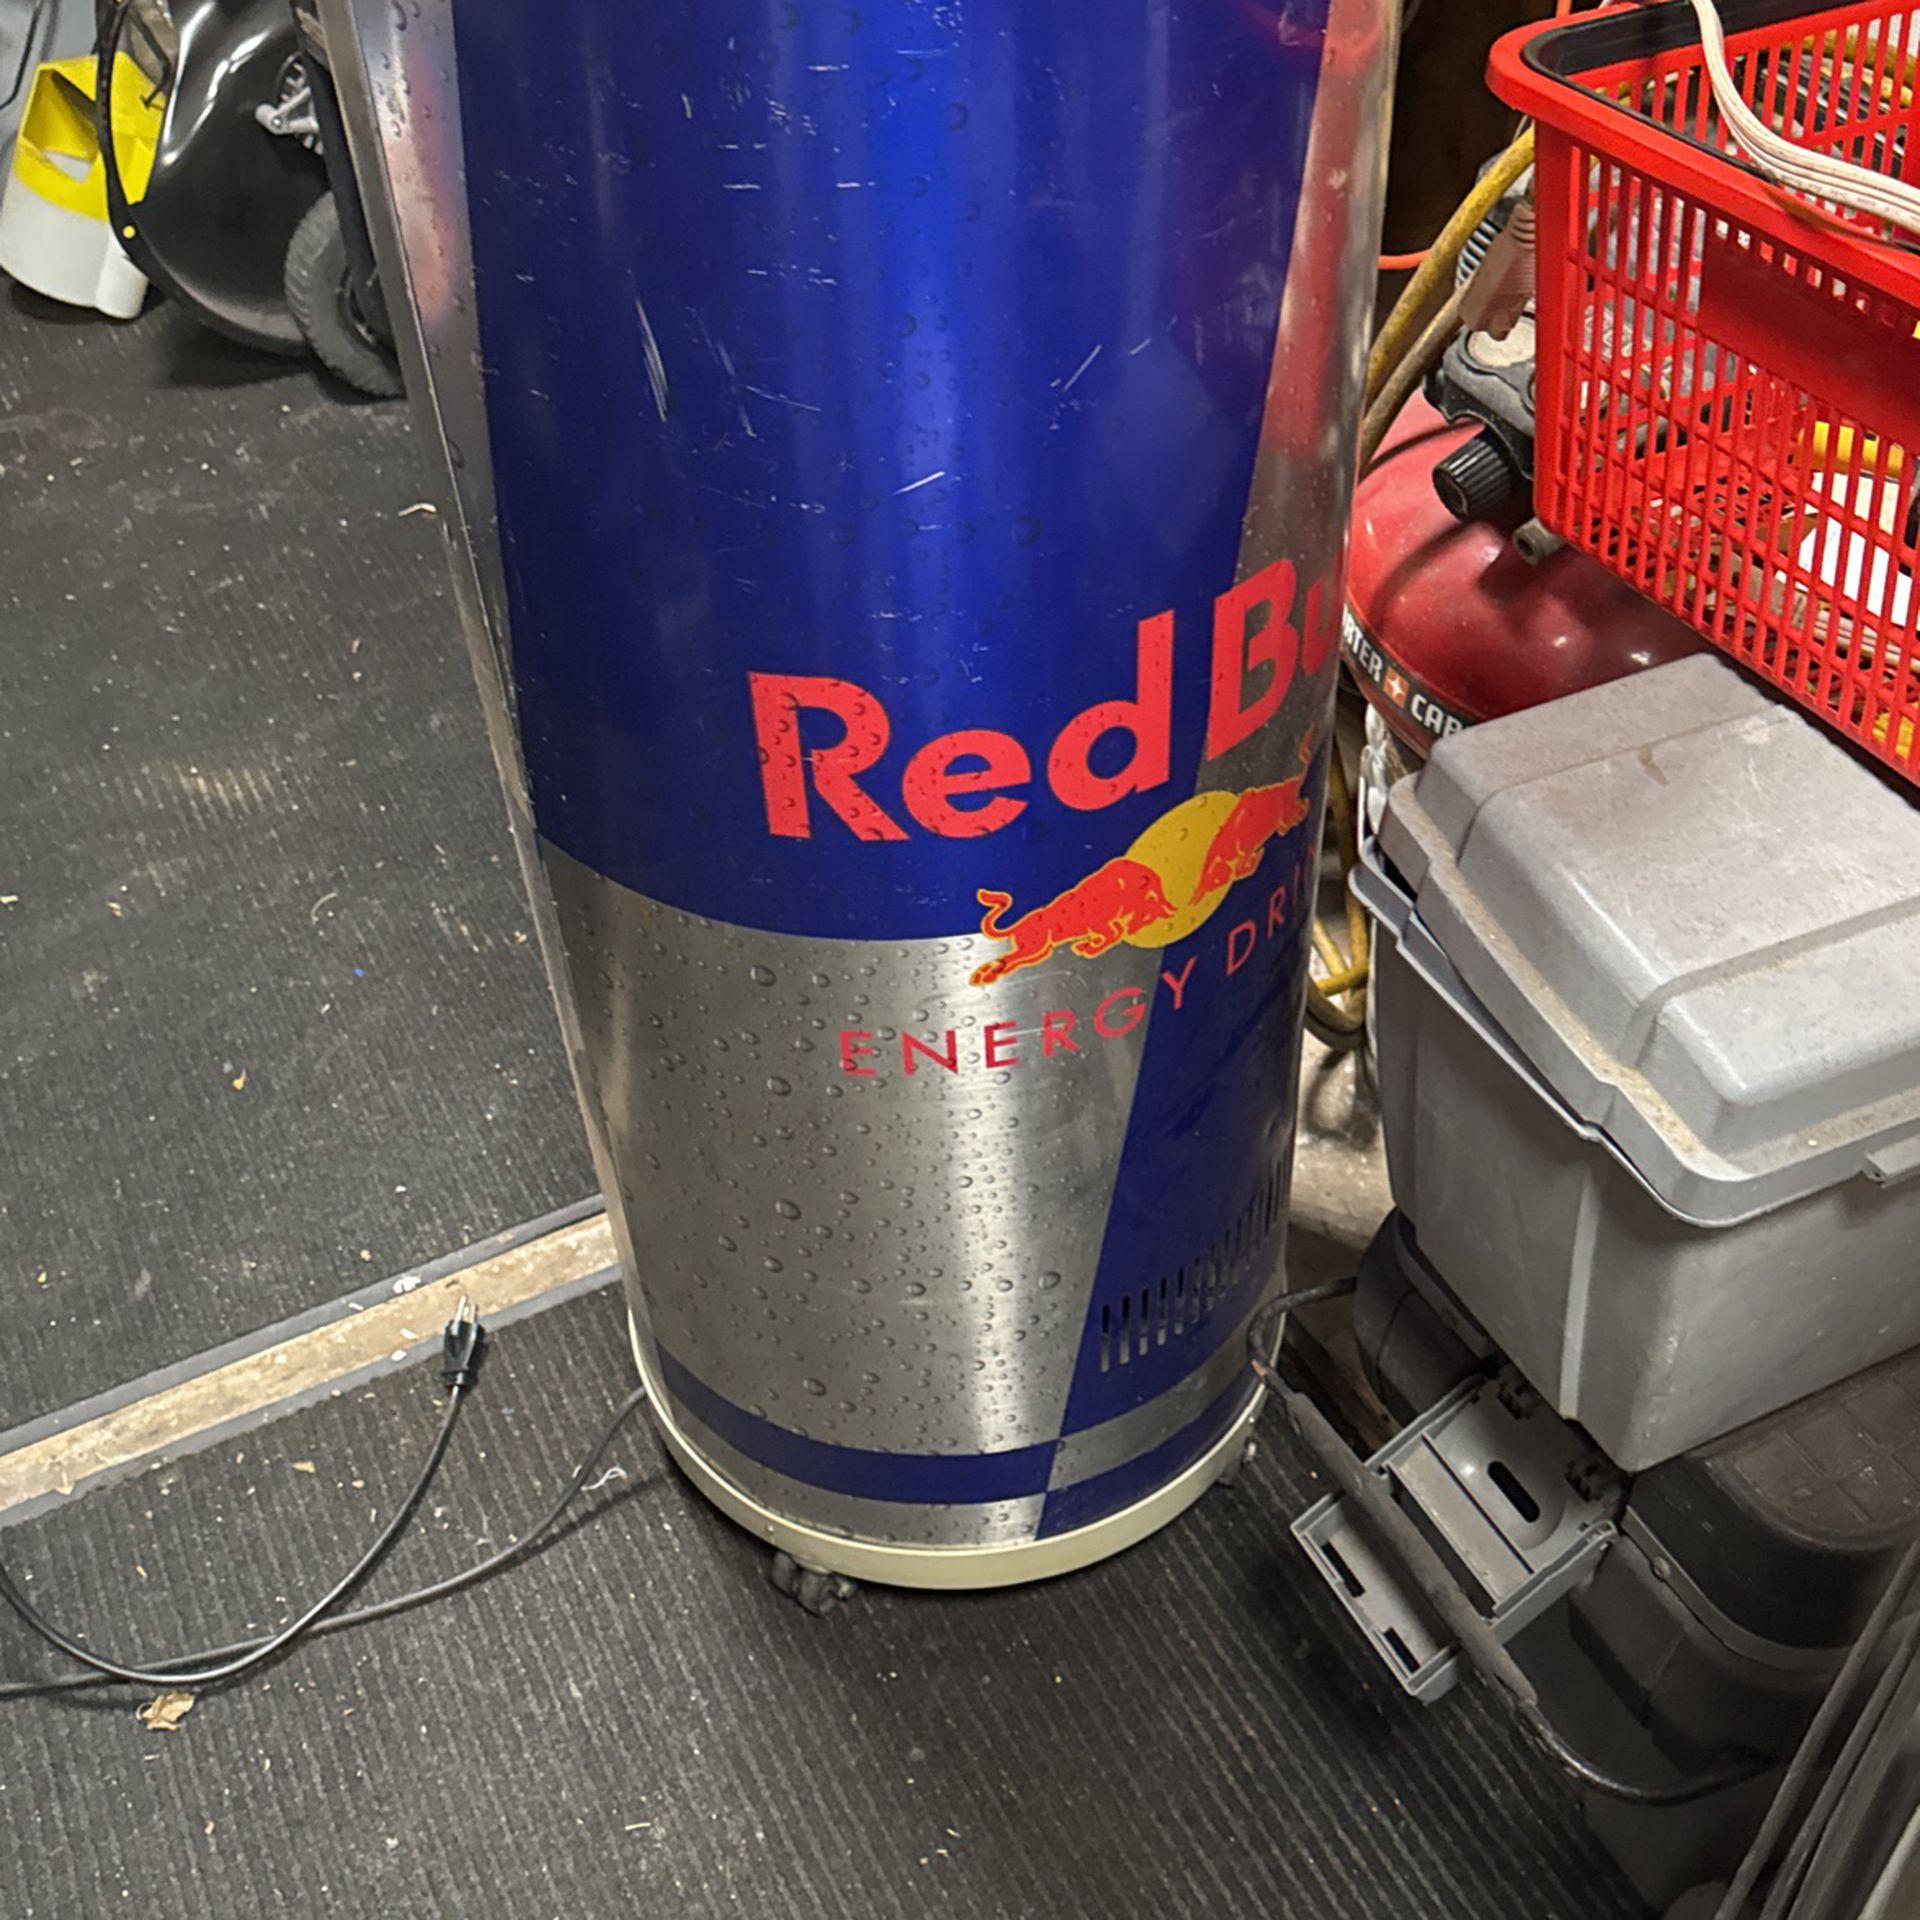 Red Bull Cooler